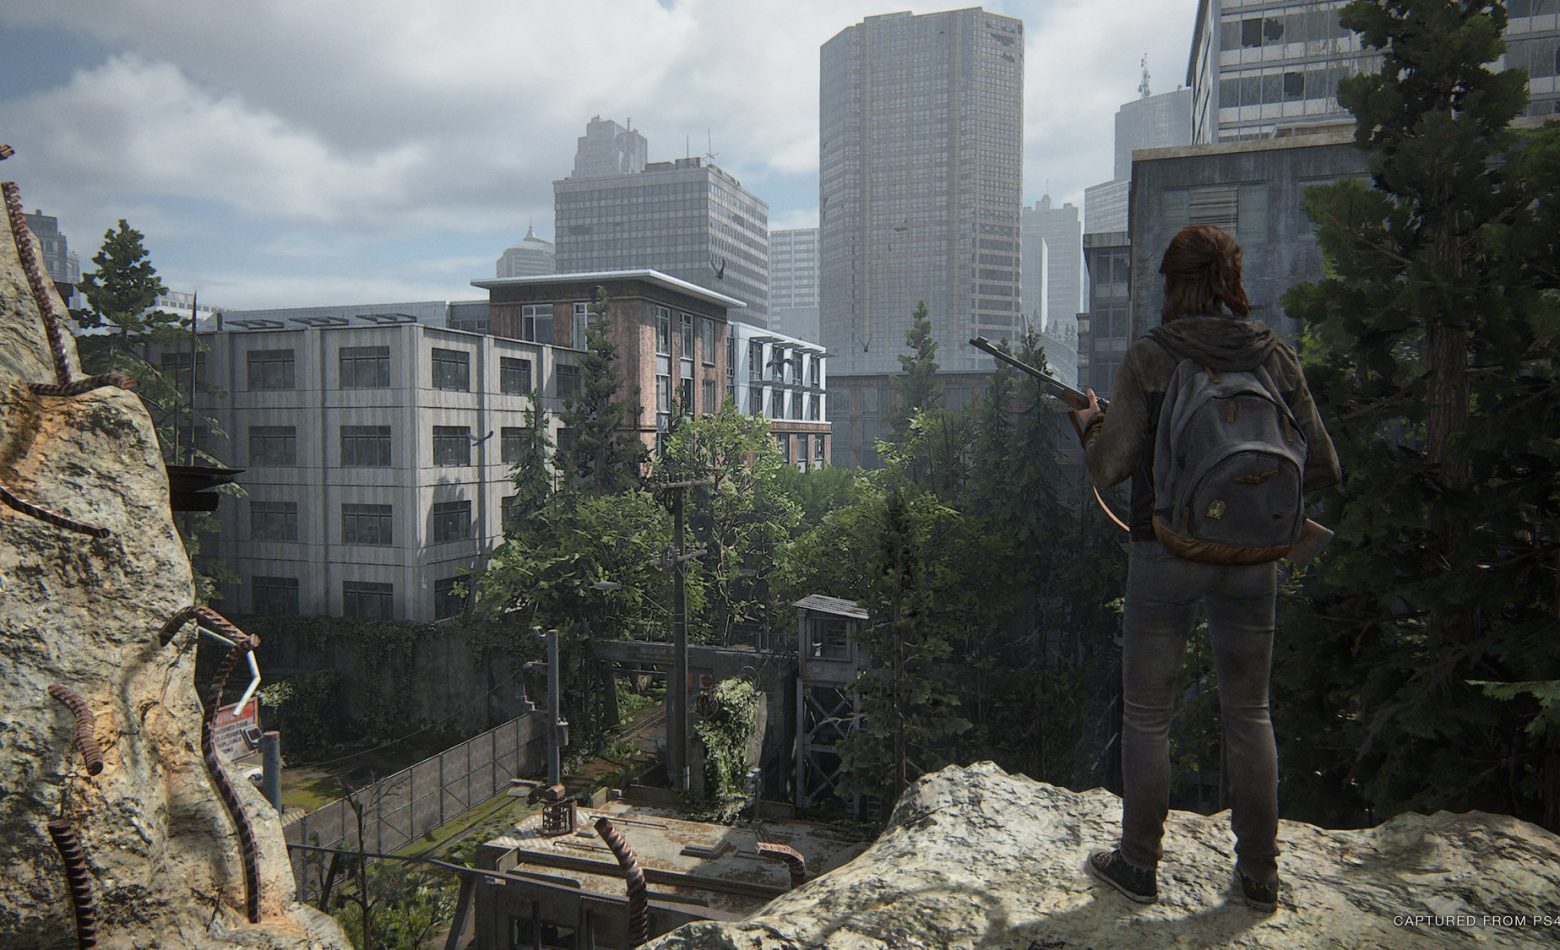 The Last of Us Part 2: seguindo adiante com tristeza [Gameplay]